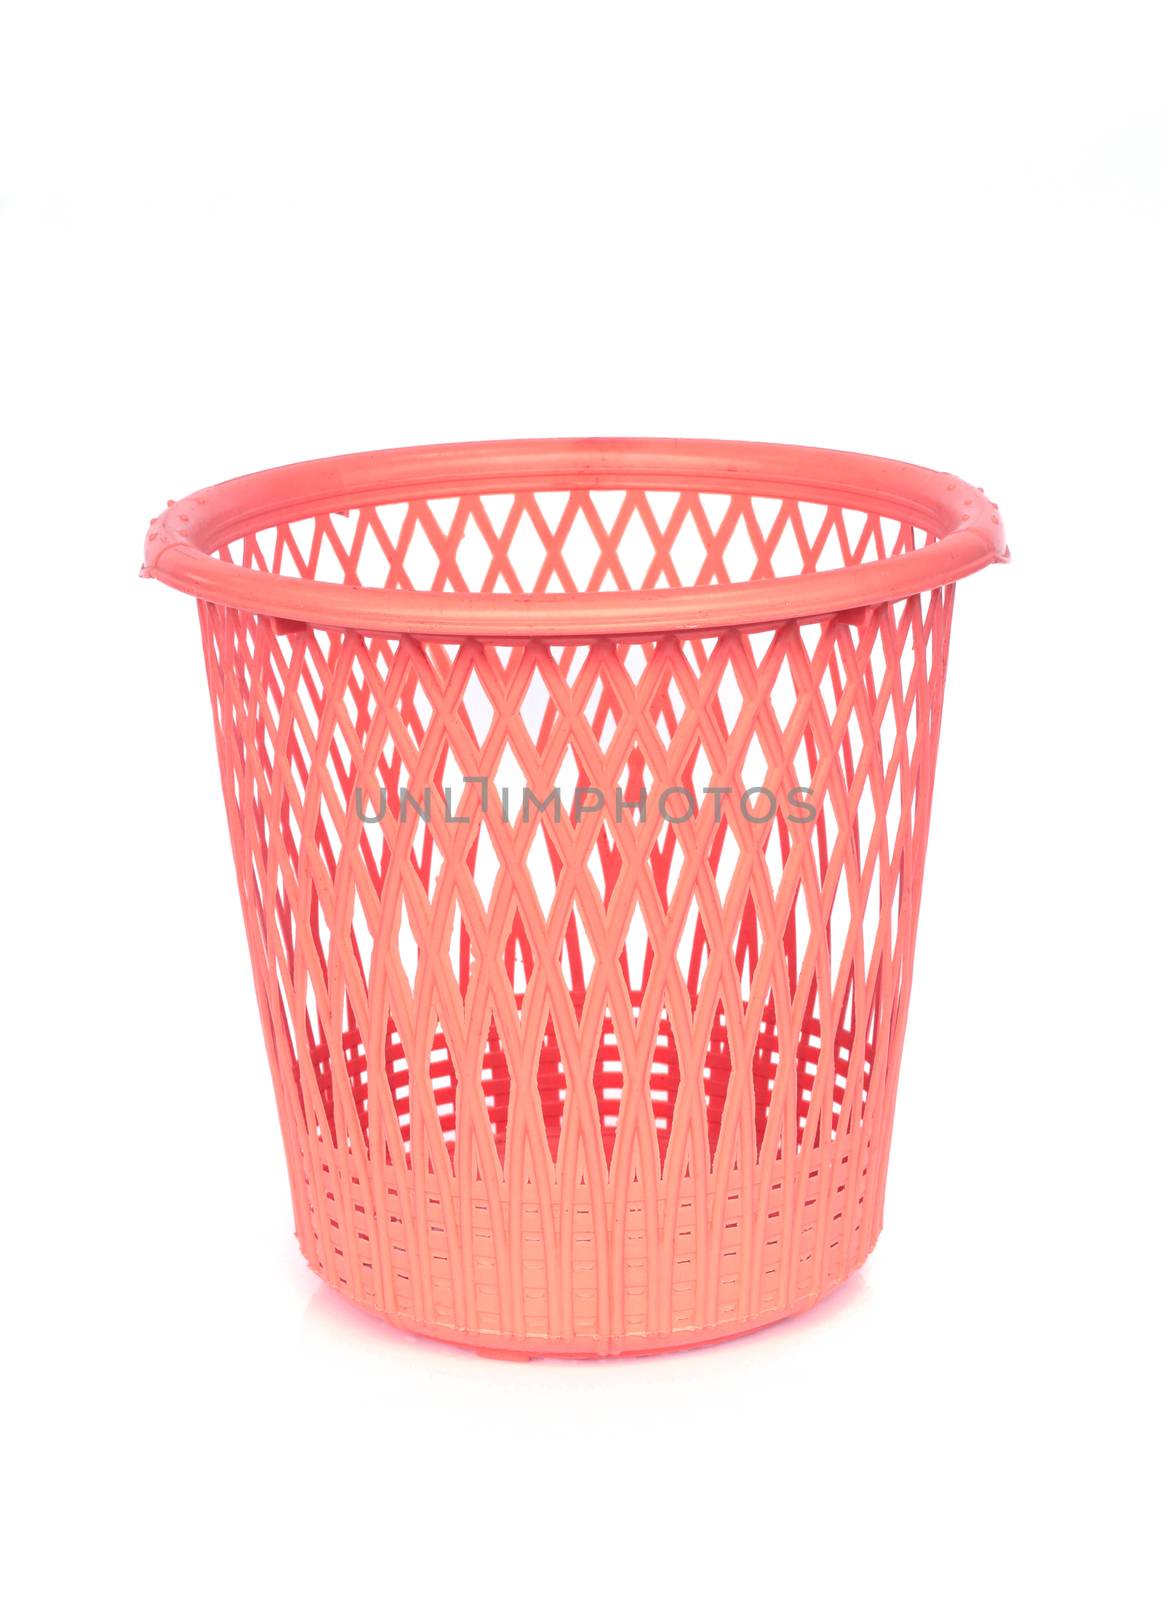 Image of plastic basket on white background